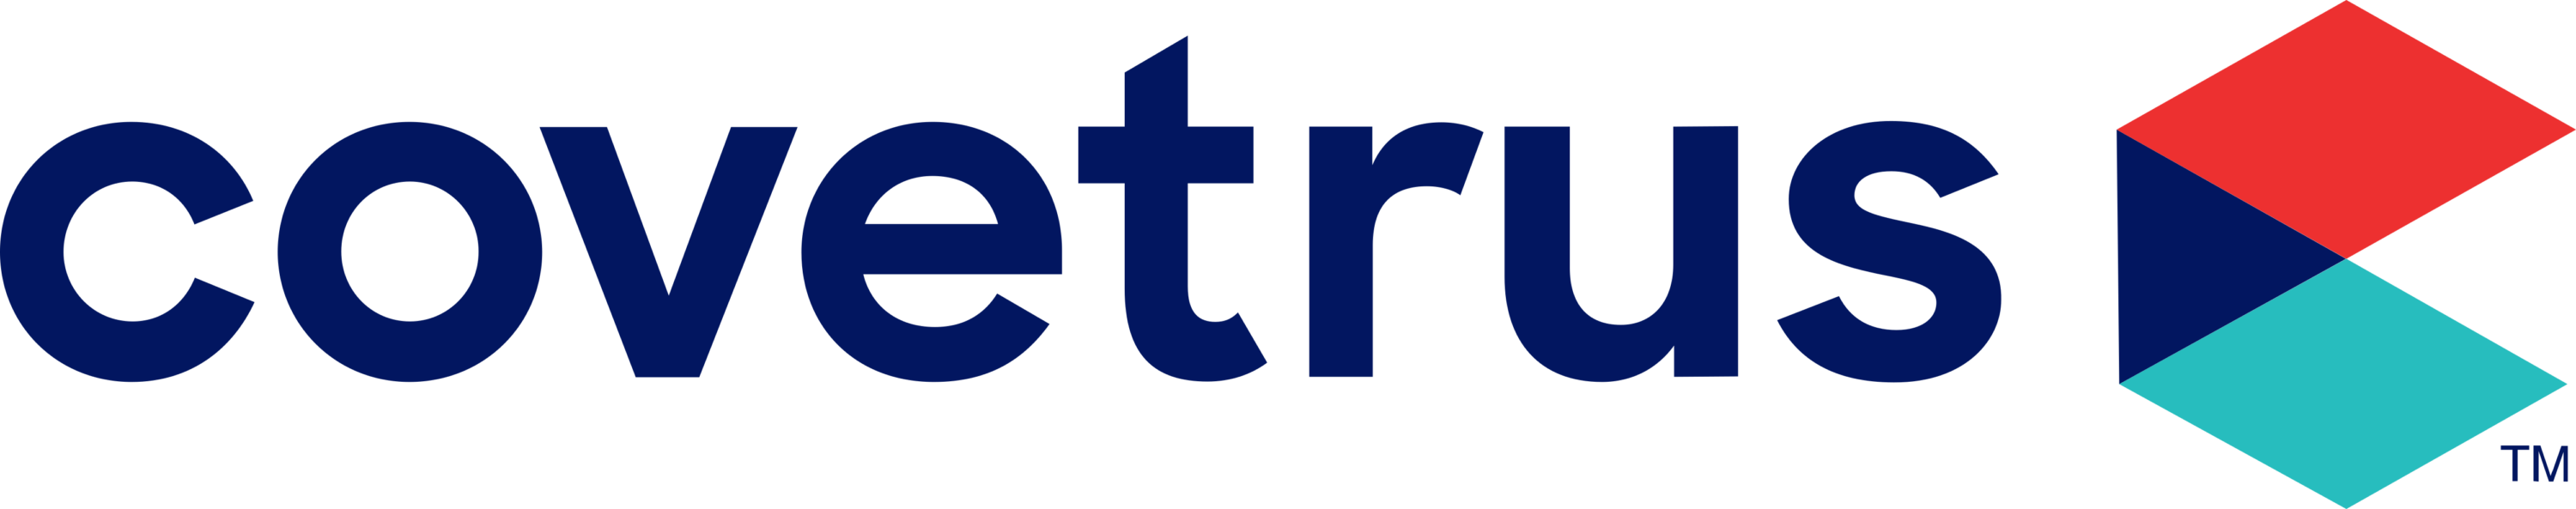 Covetrus Inc Logo